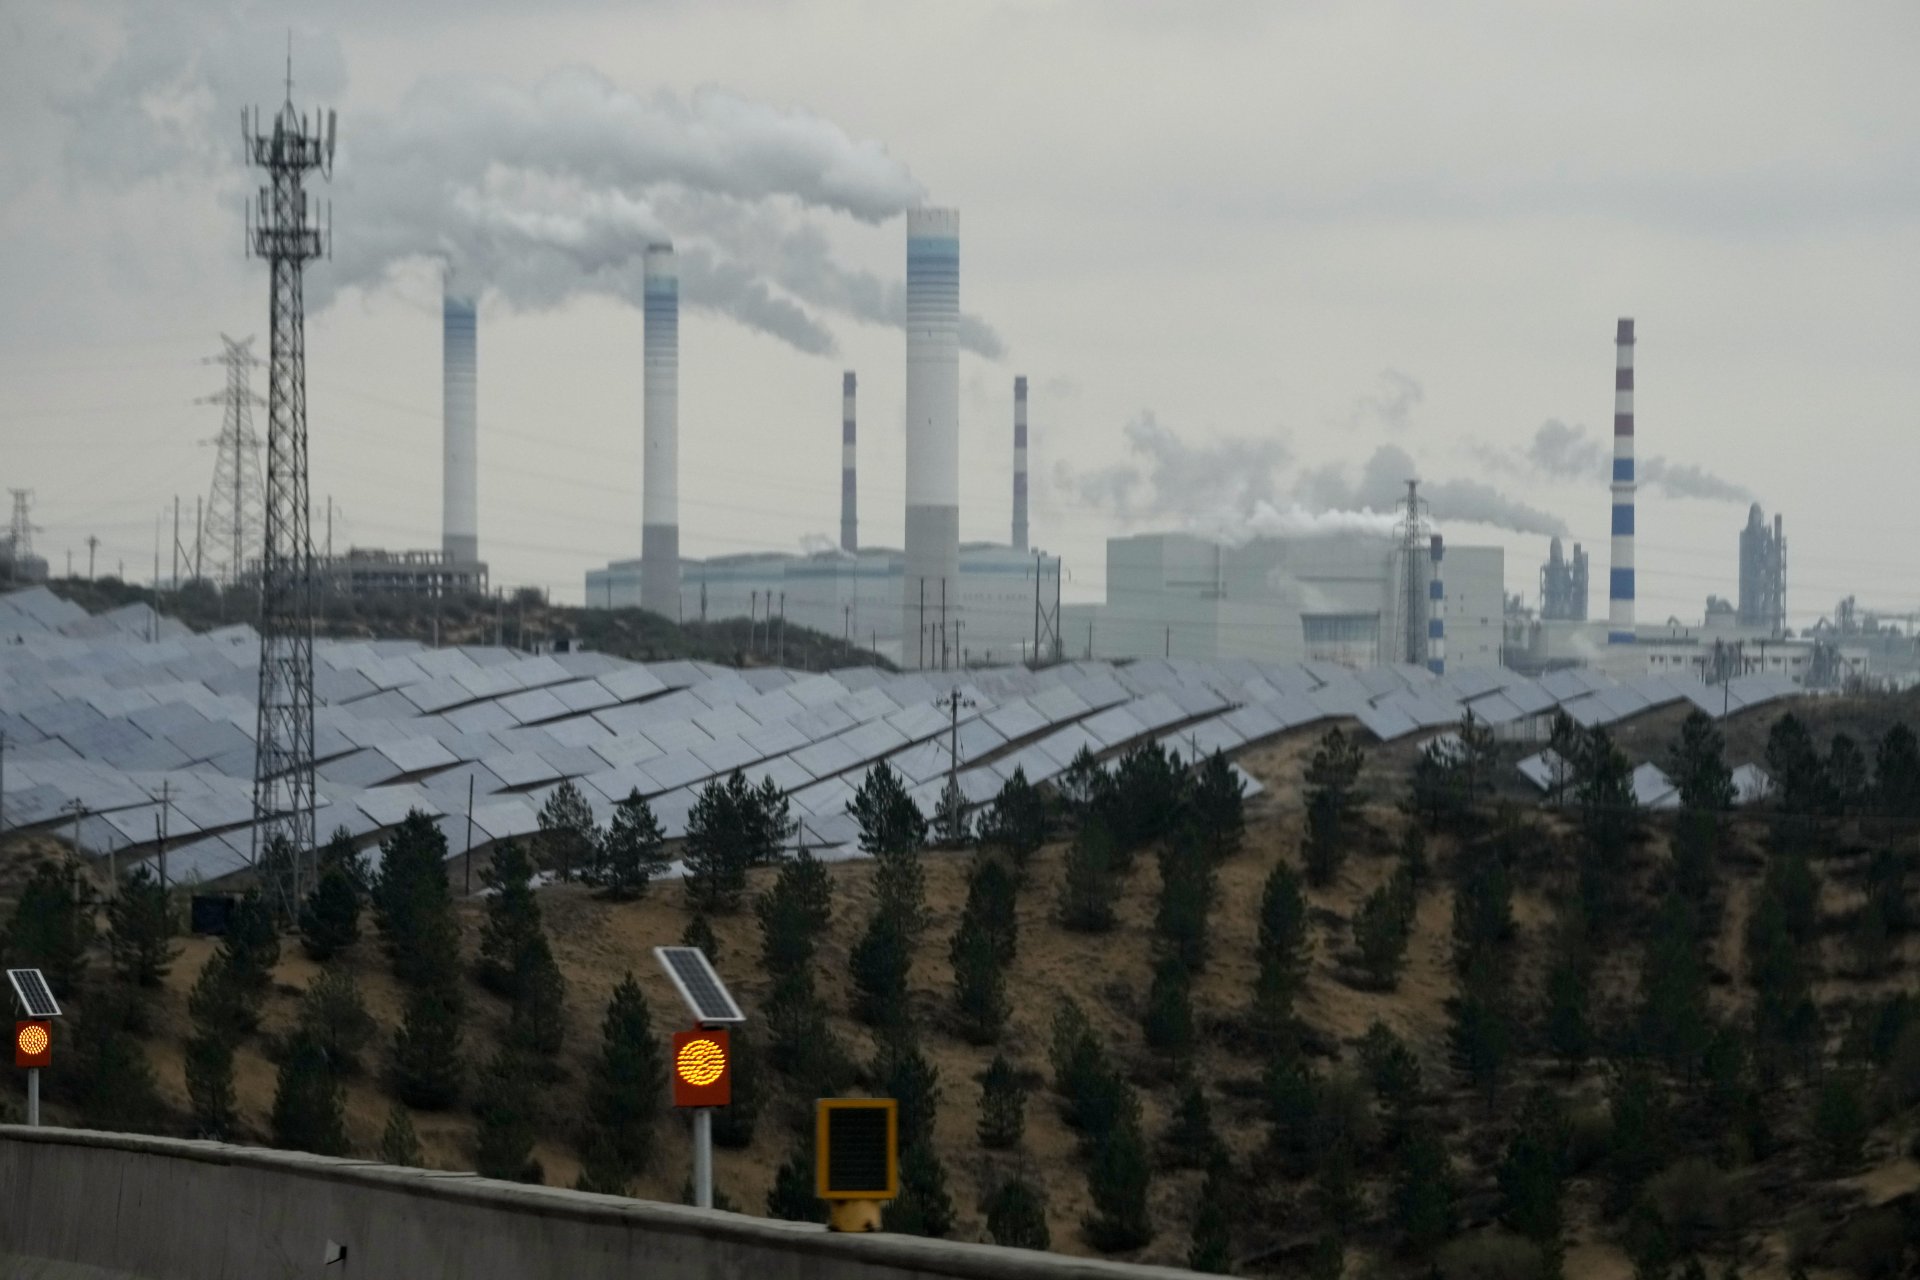 Соларни панели на фона на електроцентрали на въглища - често срещана картина в Китай